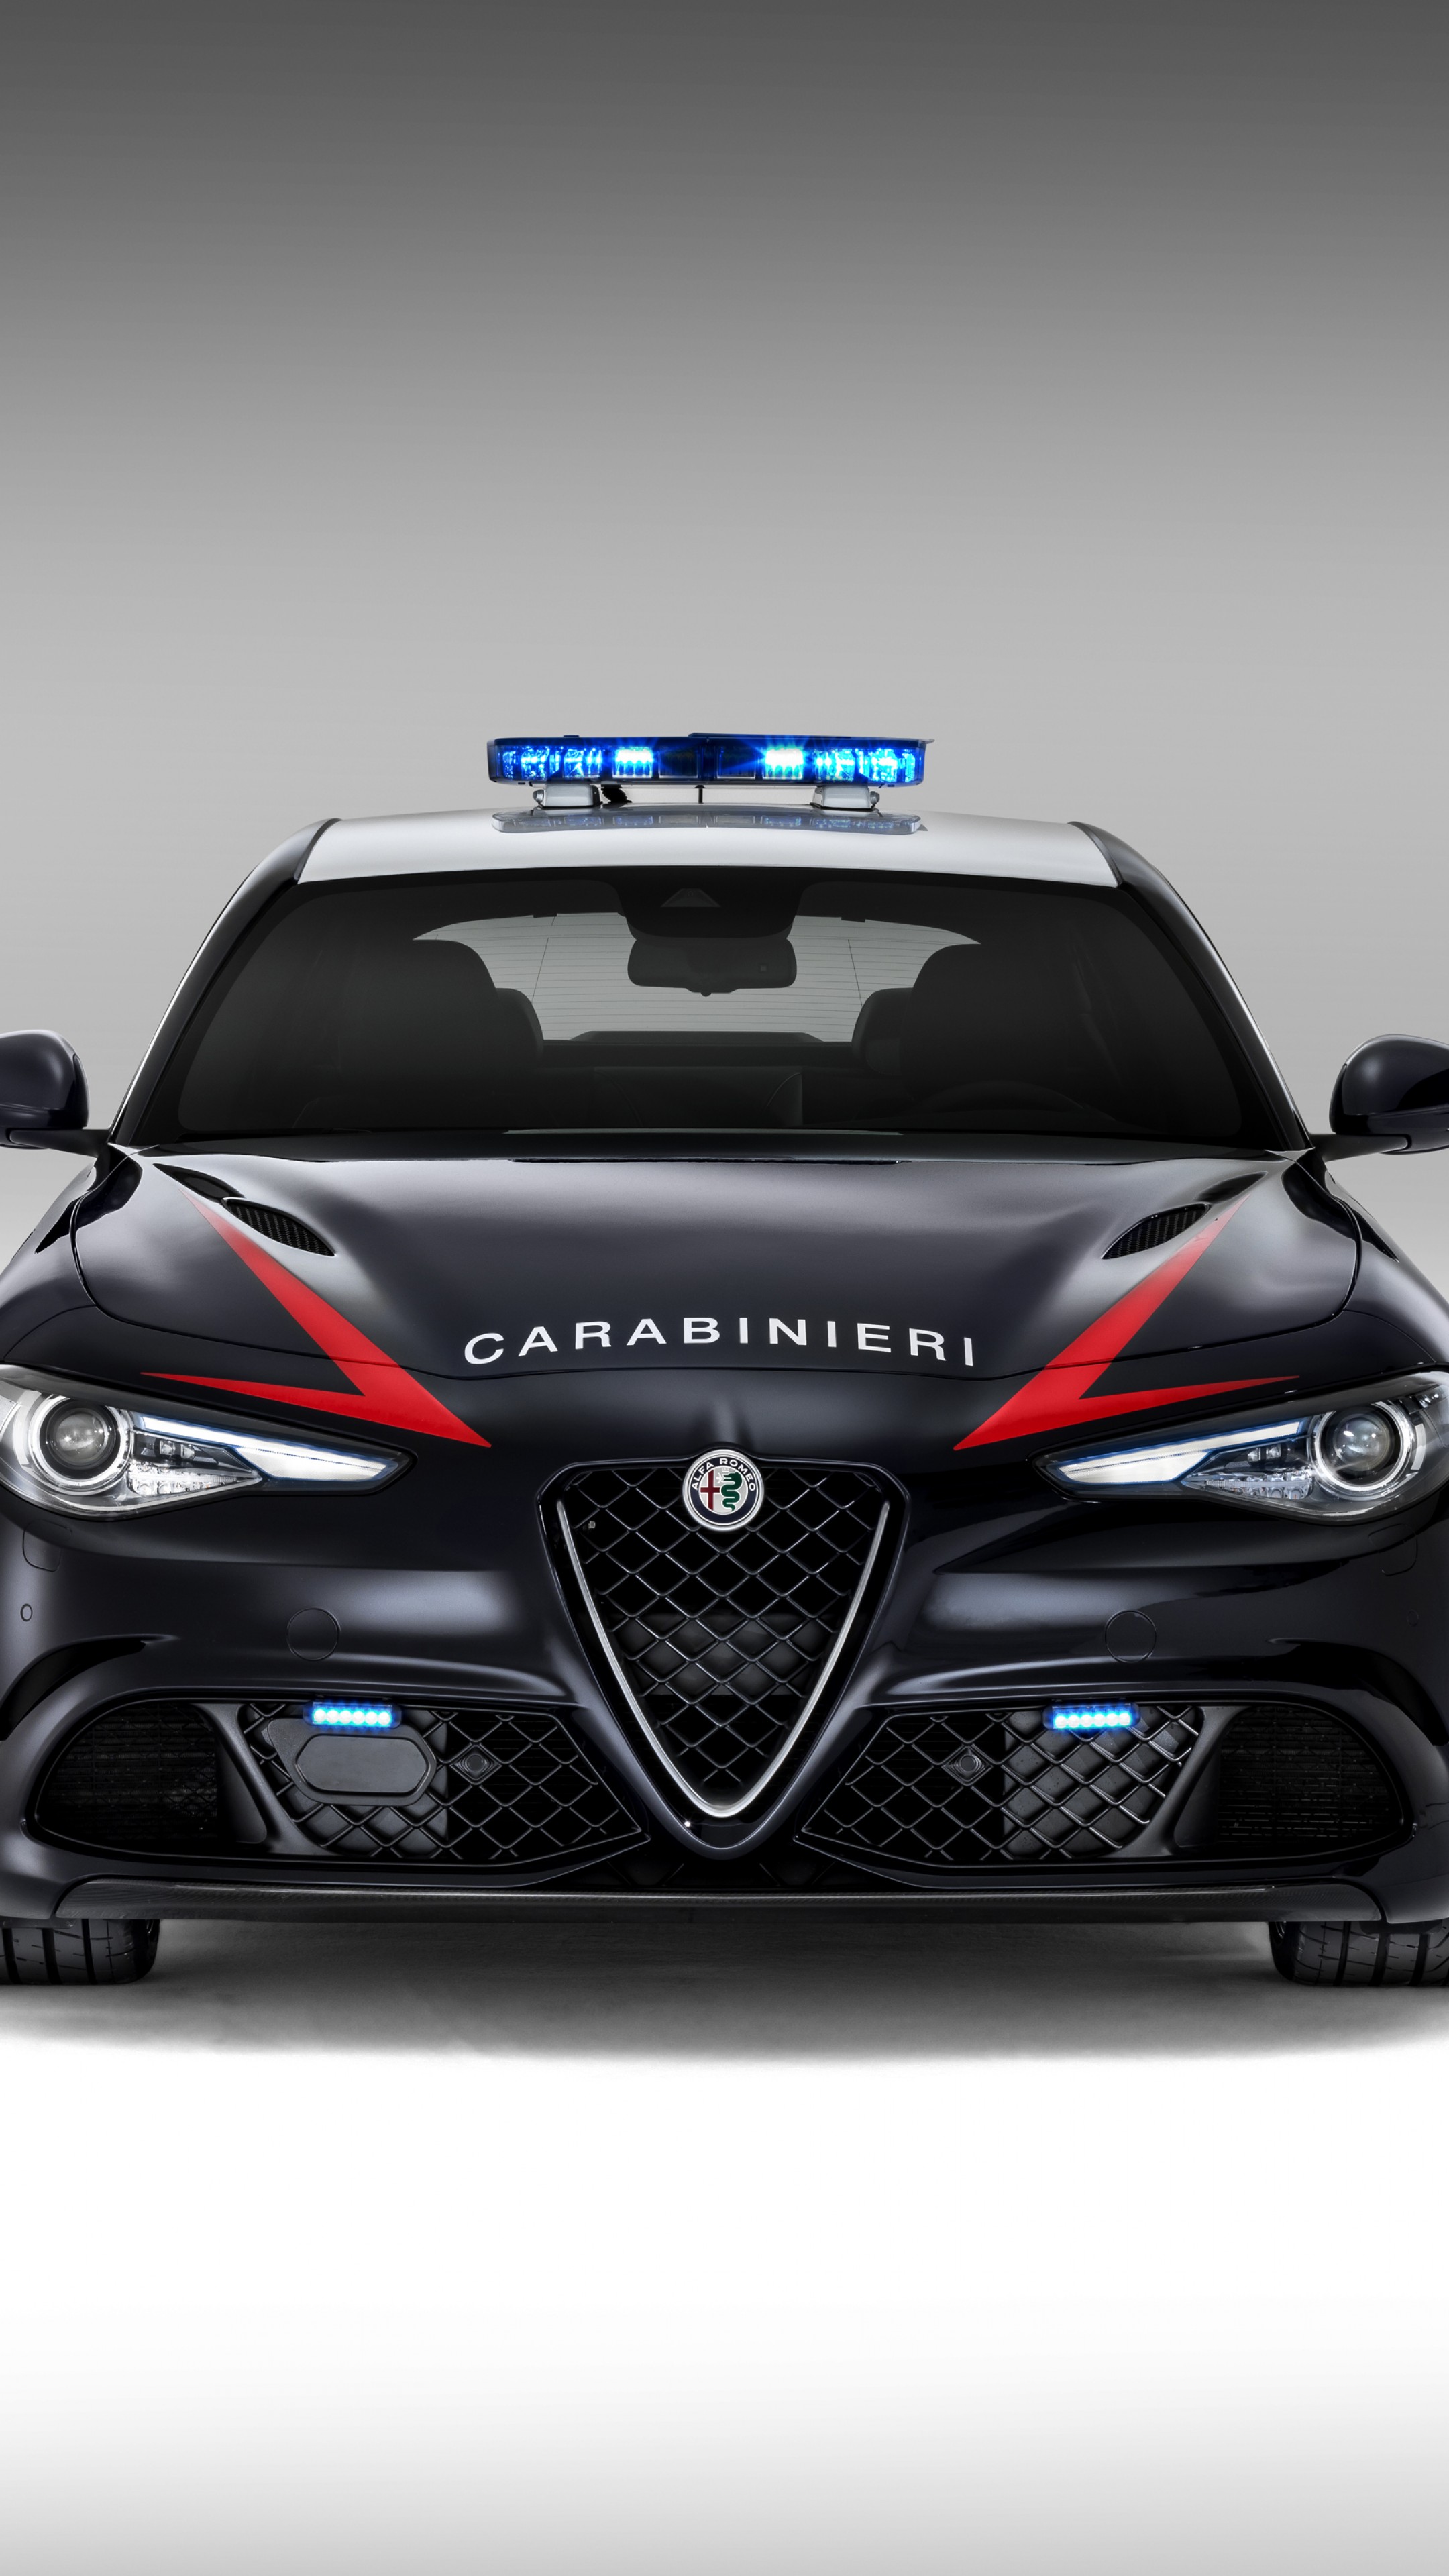 Wallpaper Alfa Romeo Giulia Quadrifoglio Carabinieri police